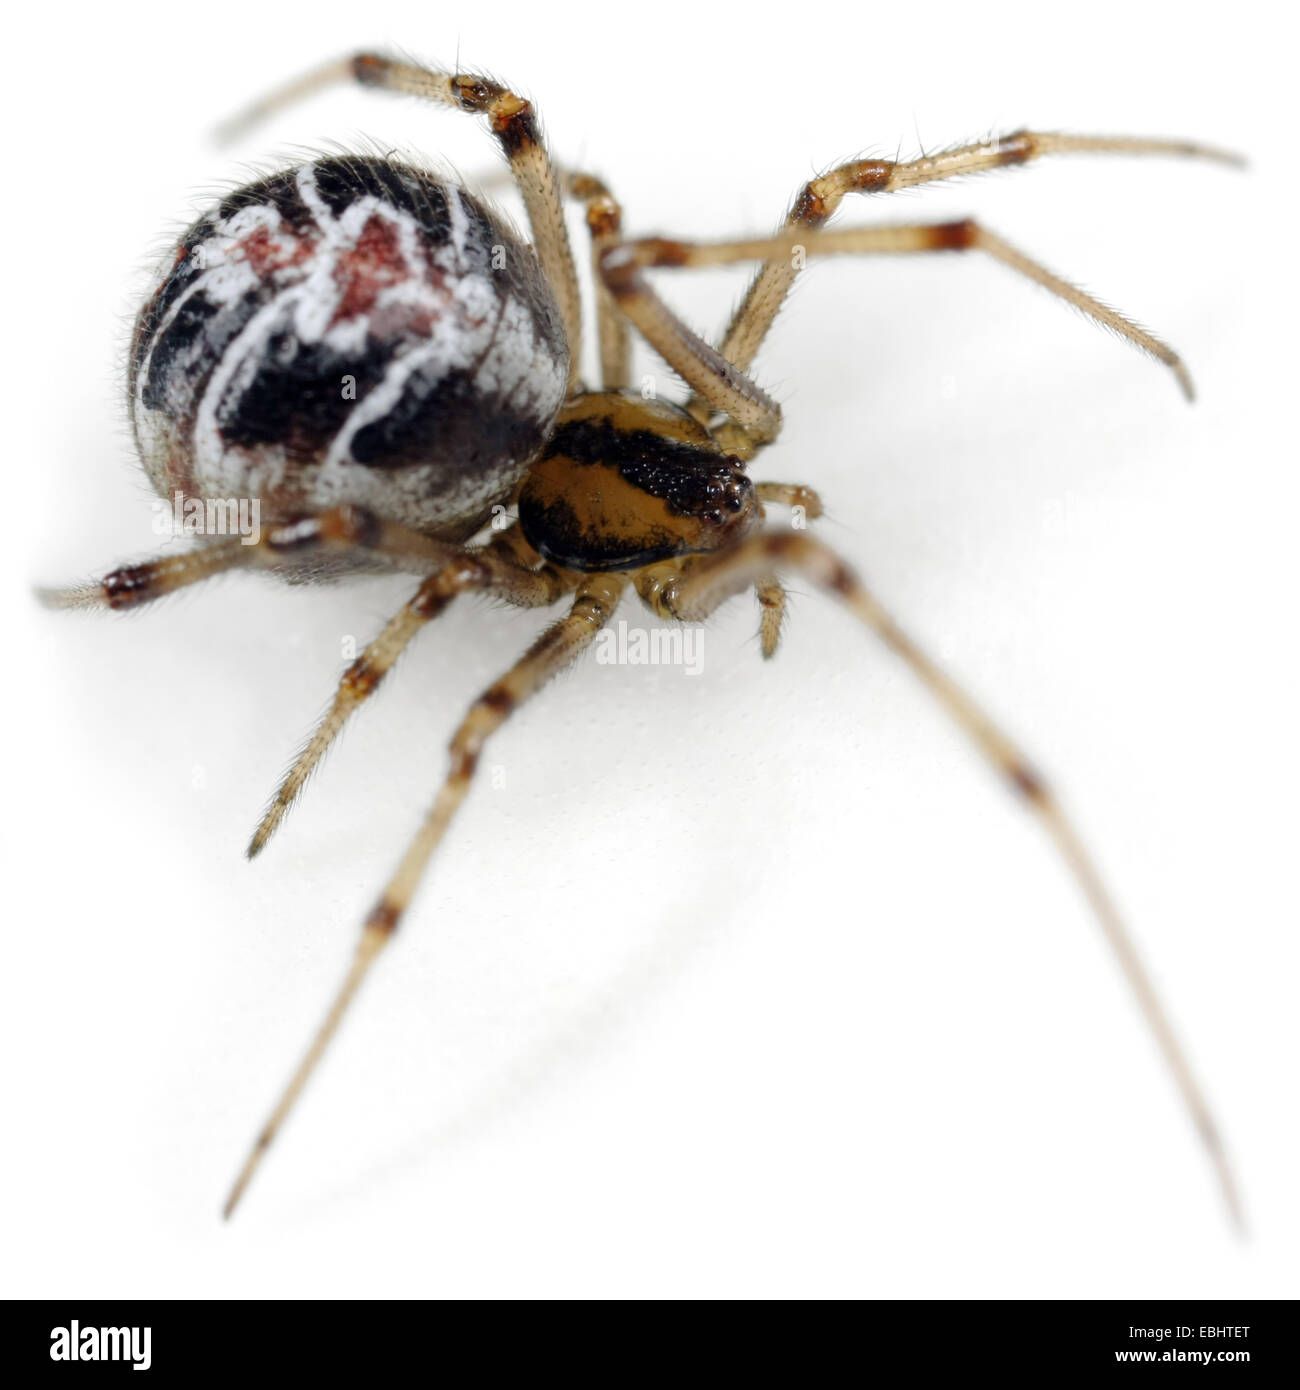 Una femmina I Mothercare spider (Theridion sisyphium), su uno sfondo bianco, parte della famiglia Theridiidae - Comb-Footed ragni. Foto Stock